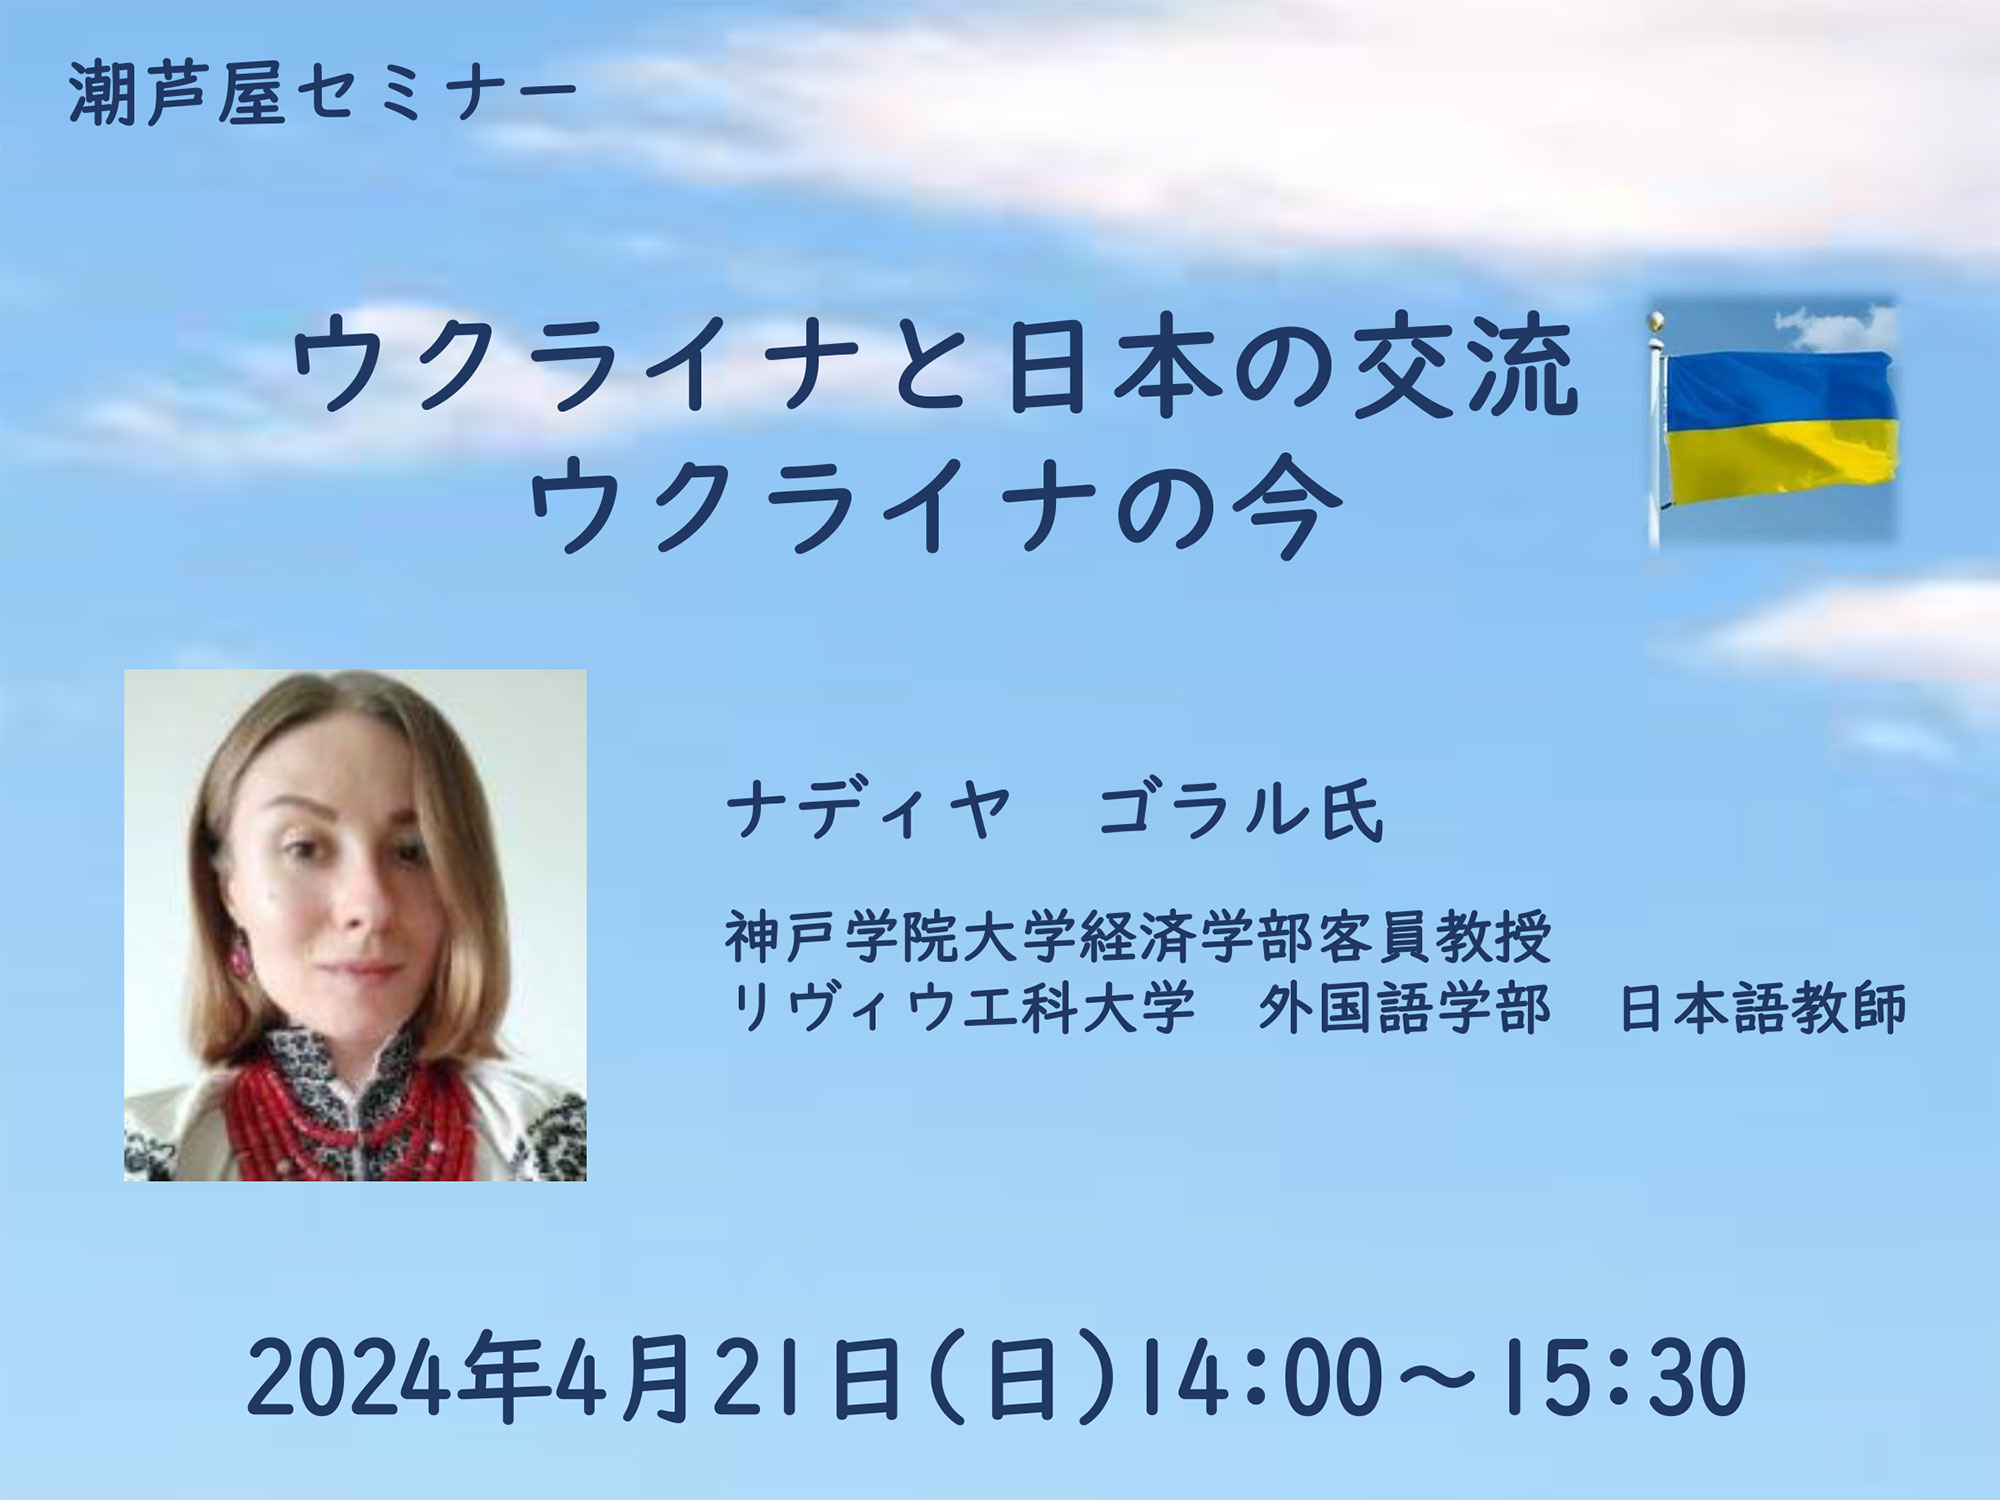 2024年4月21日 潮芦屋セミナー ウクライナと日本の交流 ウクライナの今